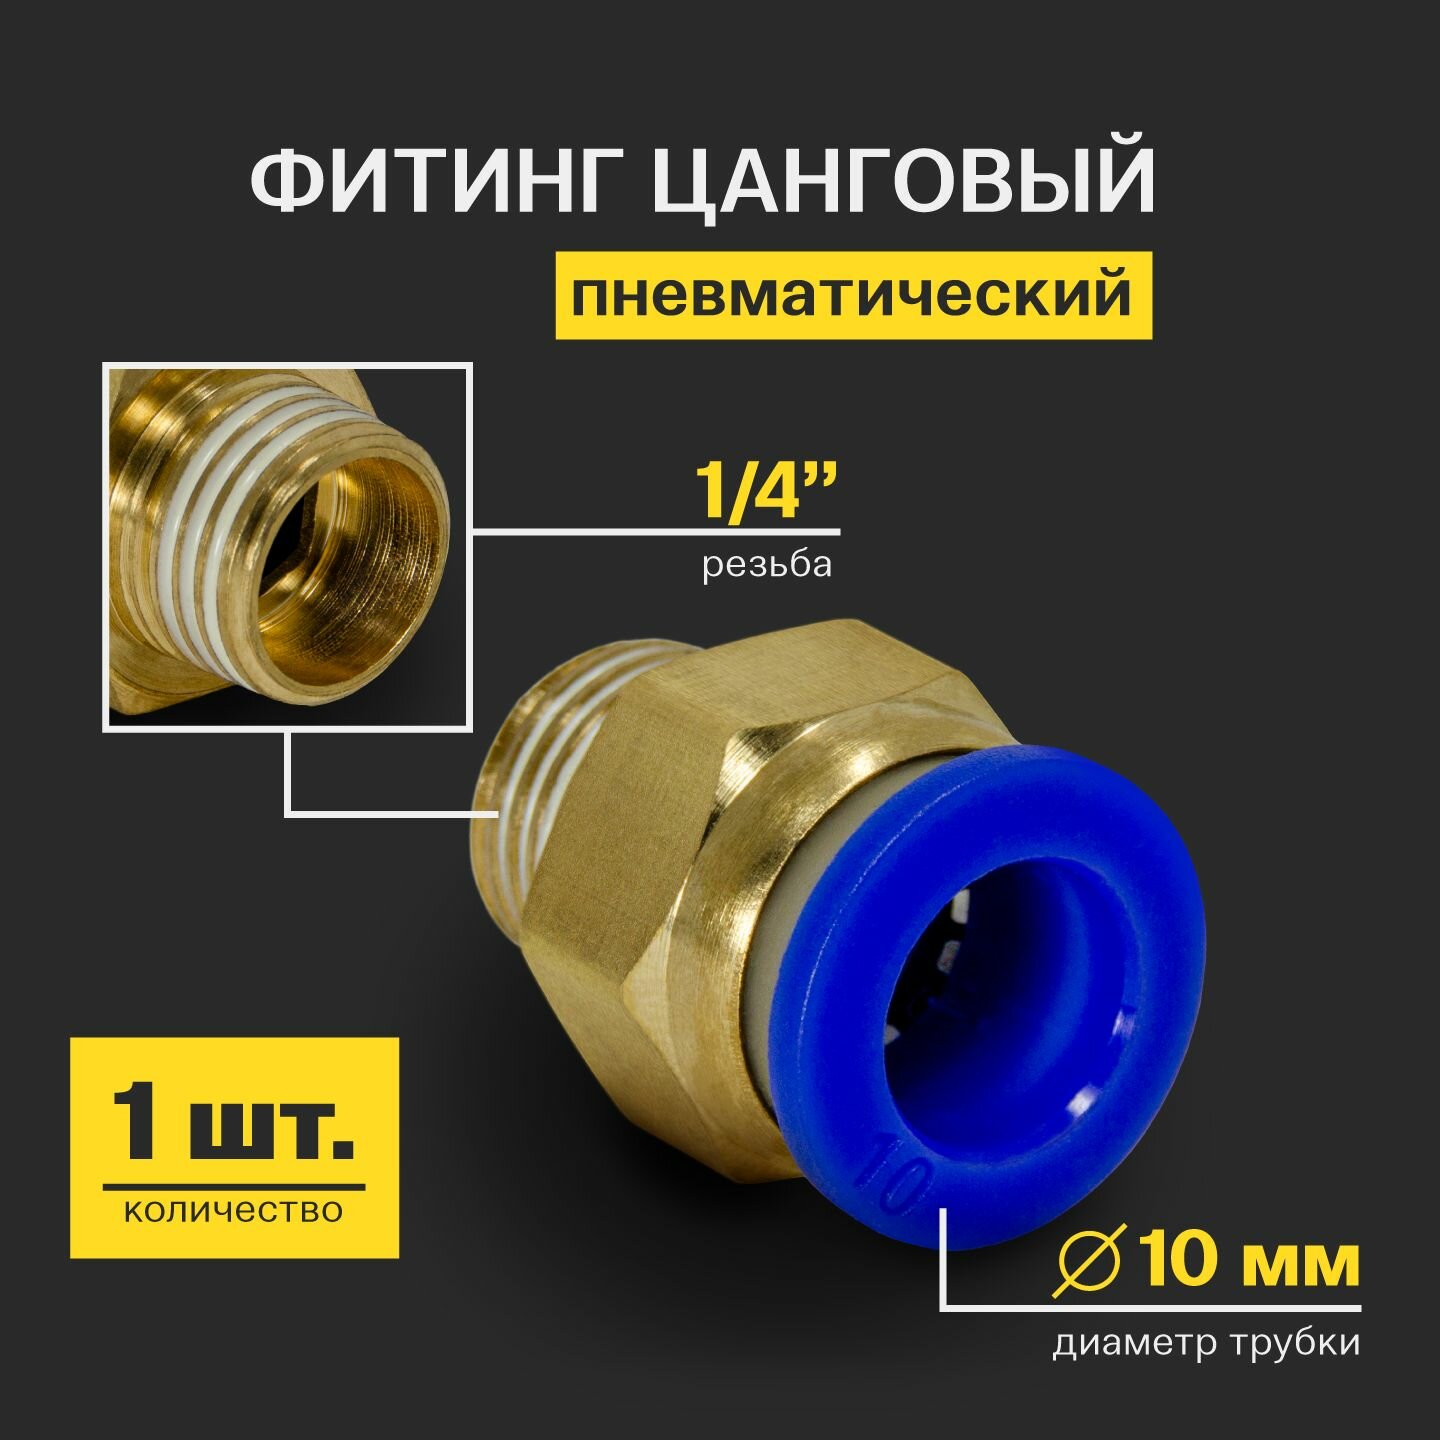 Фитинг пневматический быстросъемный цанговый прямой (наружная резьба) 1/4" 10 мм - 1 шт.